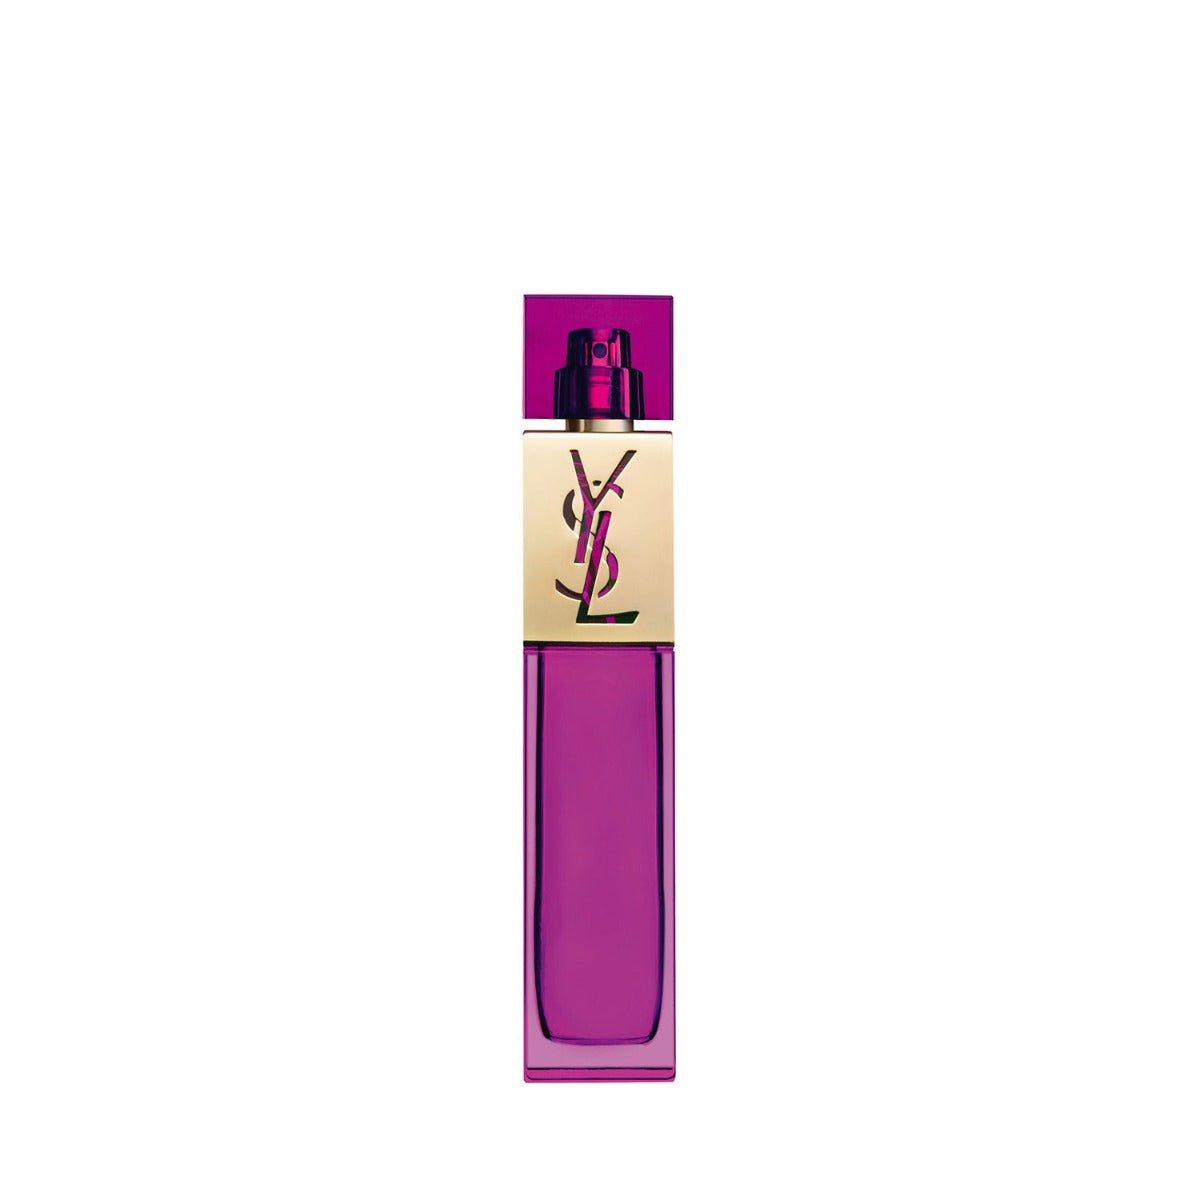 Yves Saint Laurent Elle Eau De Parfum Spray 50ml